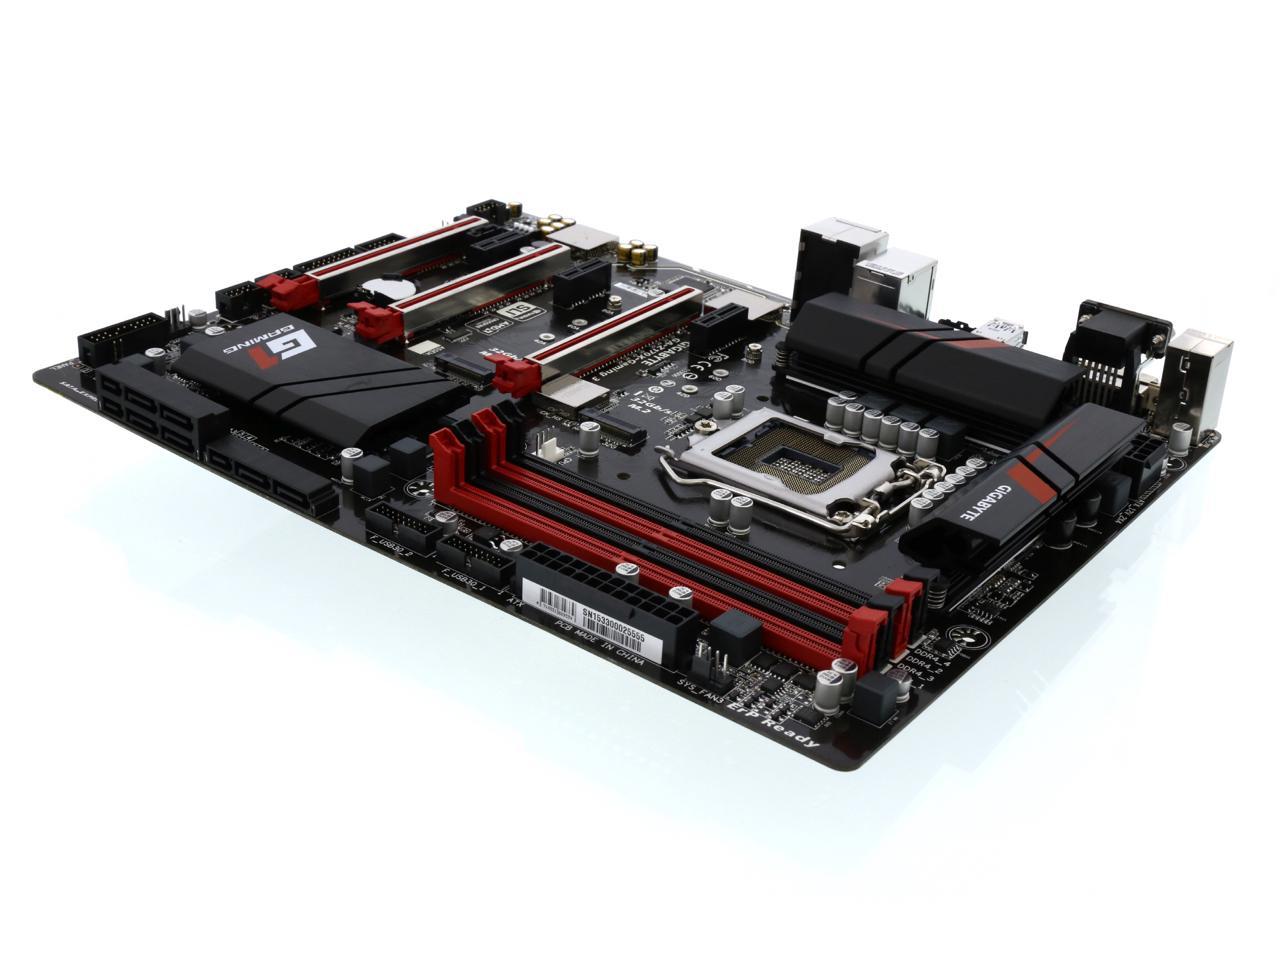 GIGABYTE G1 Gaming GA-Z170X-Gaming 3 (rev. 1.0) LGA 1151 Intel Z170 HDMI  SATA 6Gb/s USB 3.1 USB 3.0 ATX Intel Motherboard